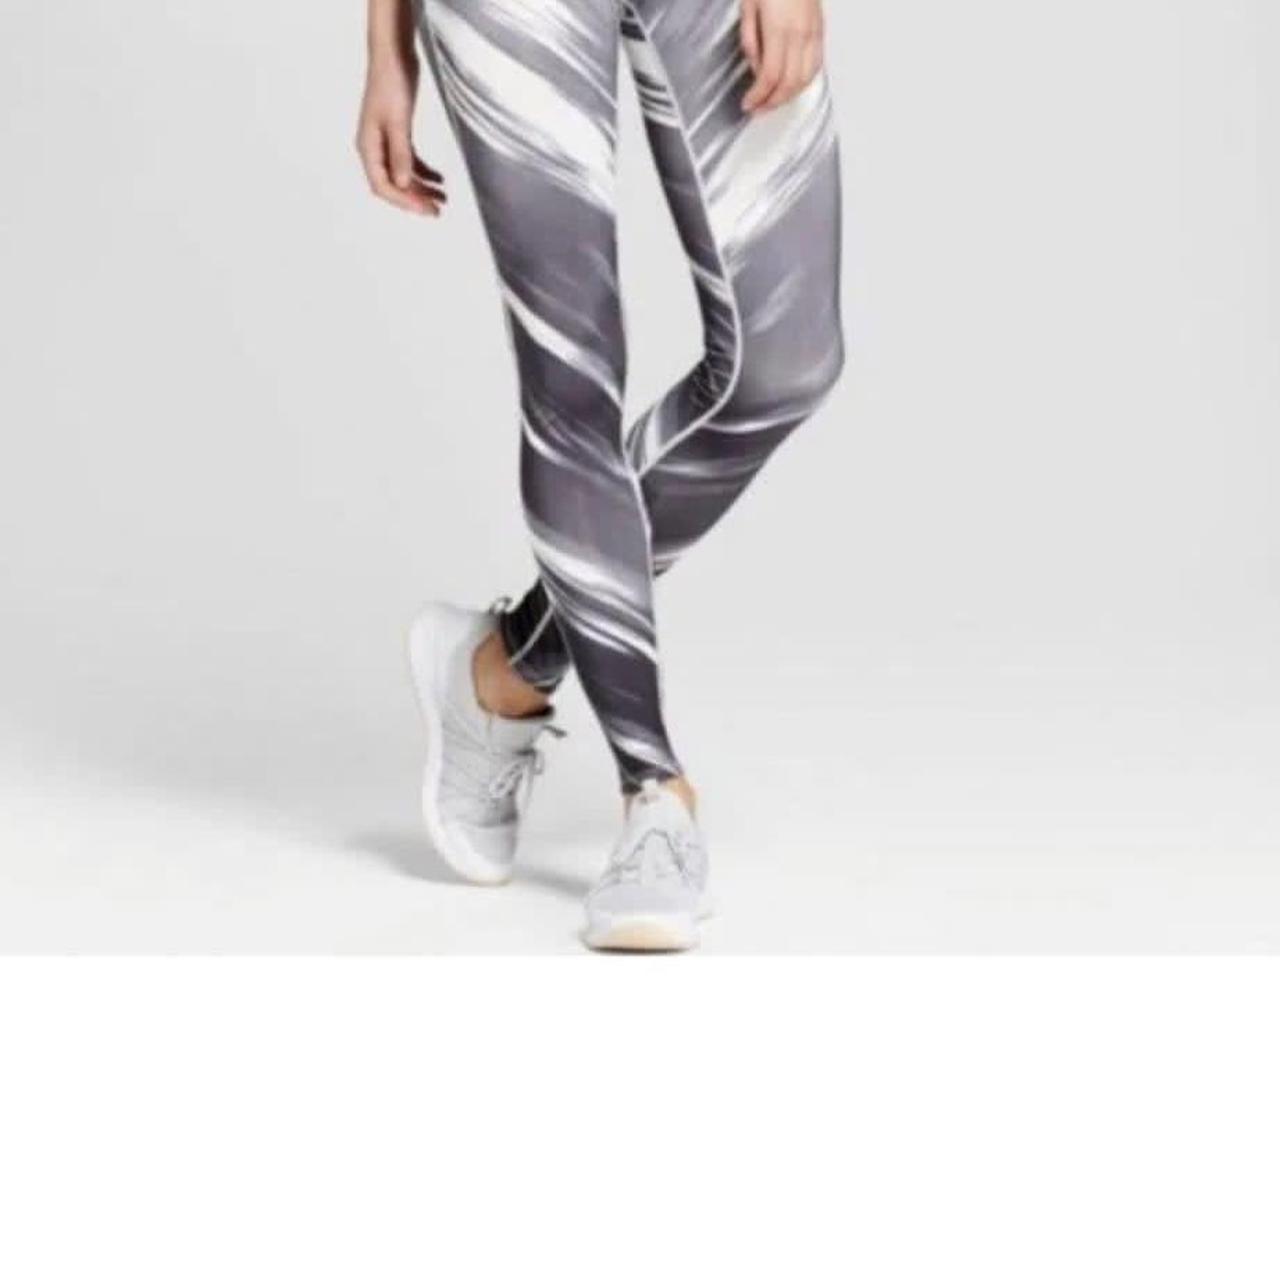 Brand:. Joy Lab Style:. athletic leggings w/ sheer - Depop